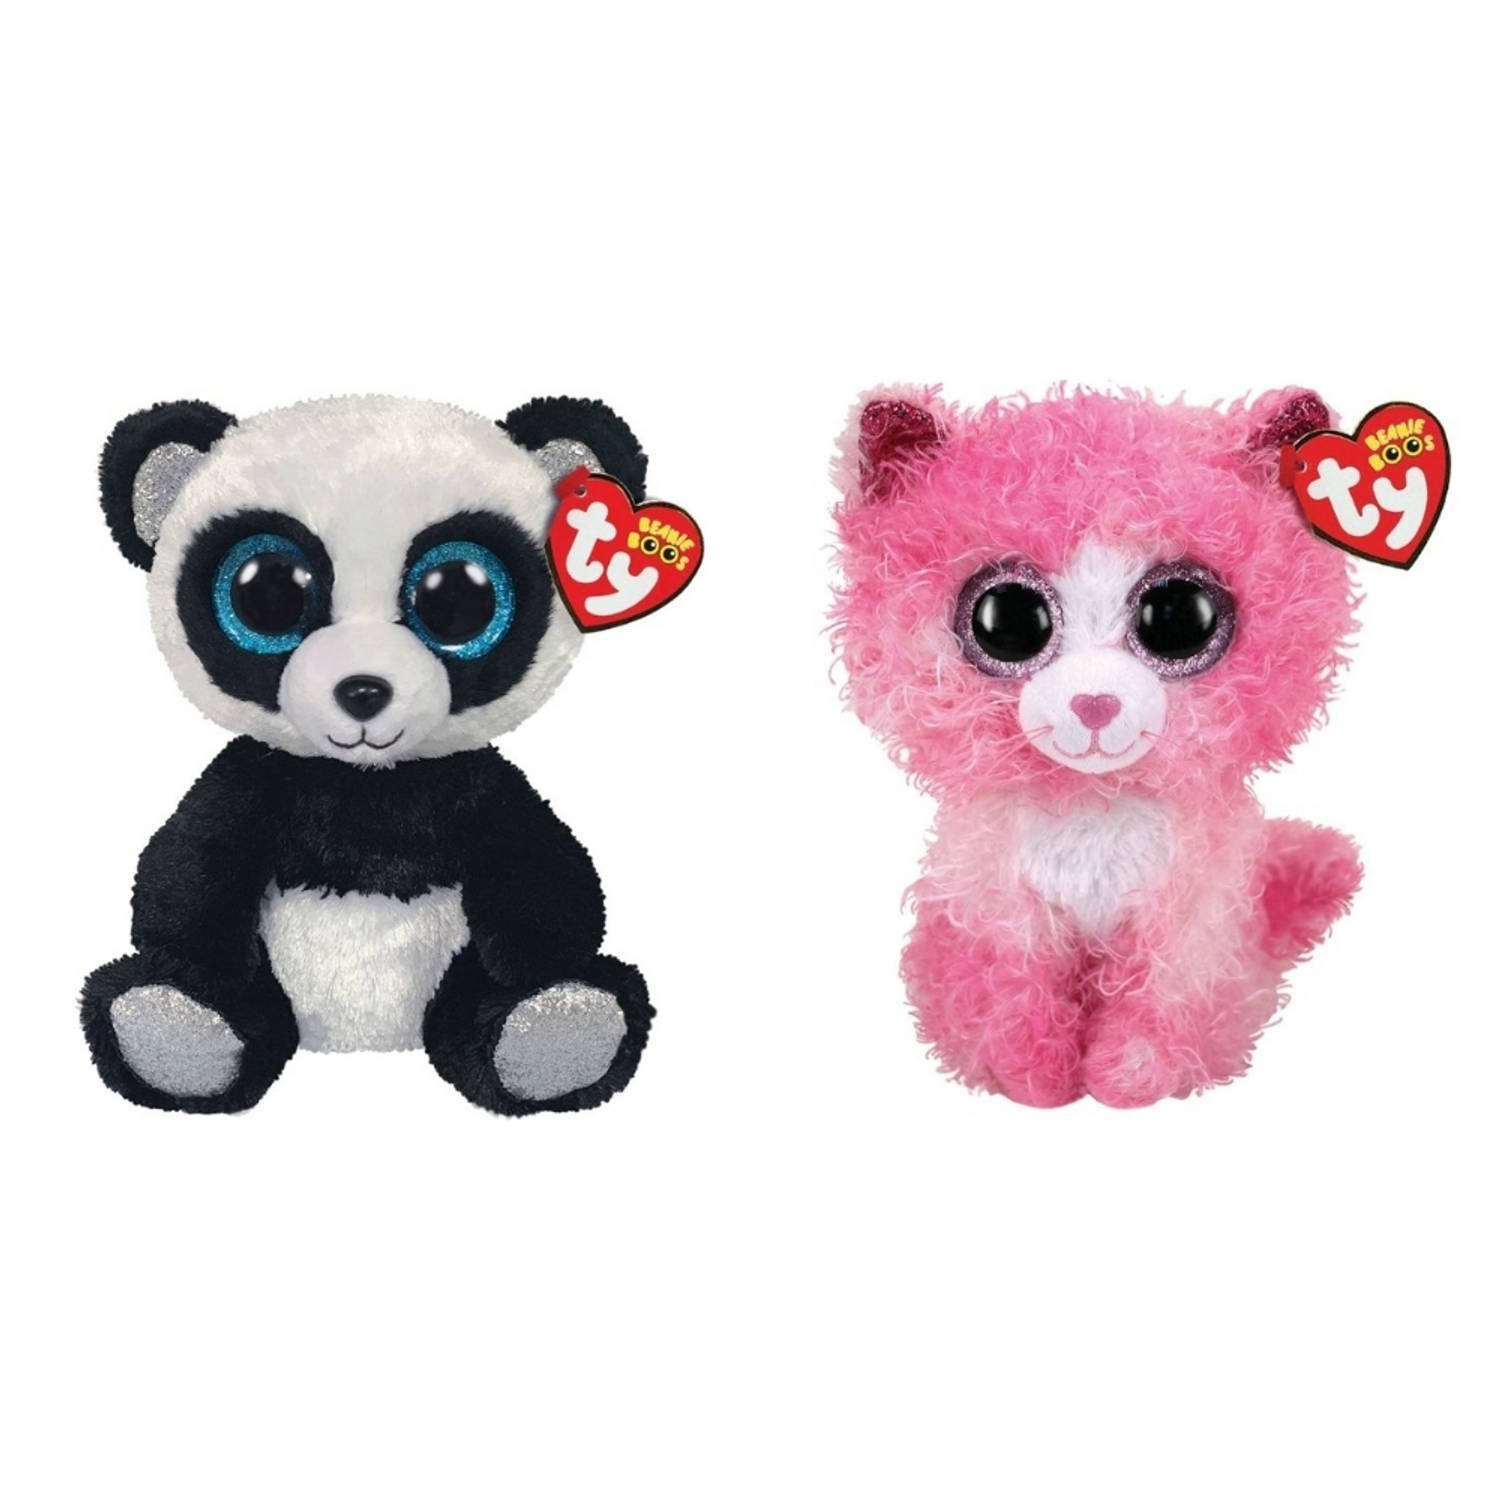 Ty - Knuffel - Beanie Boo's - Bamboo Panda & Reagan Cat